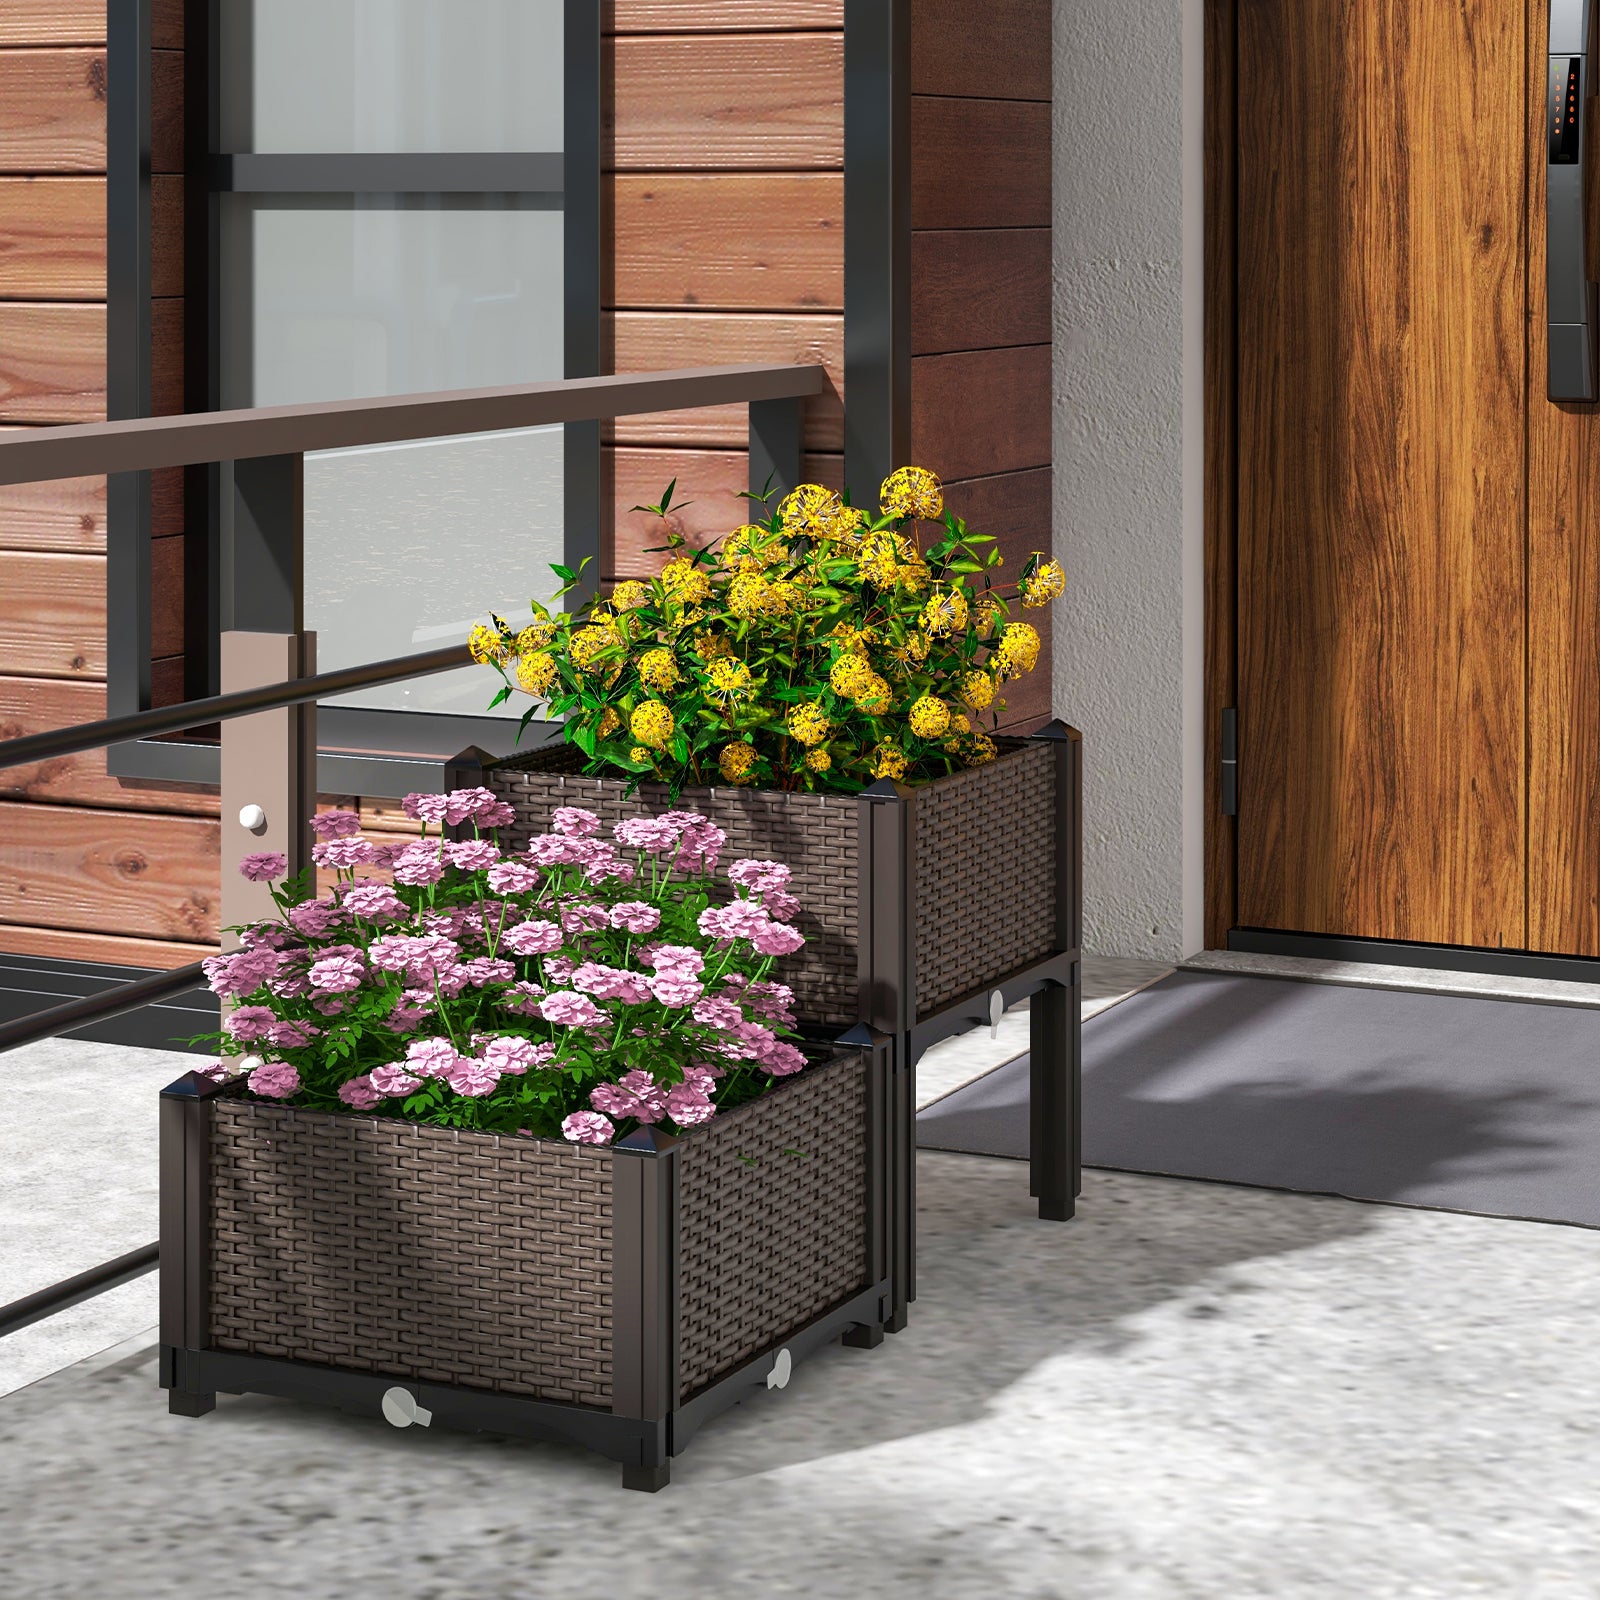 2 Set Elevated Plastic Raised Garden Bed Planter Kit for Flower Vegetable Grow-Brown